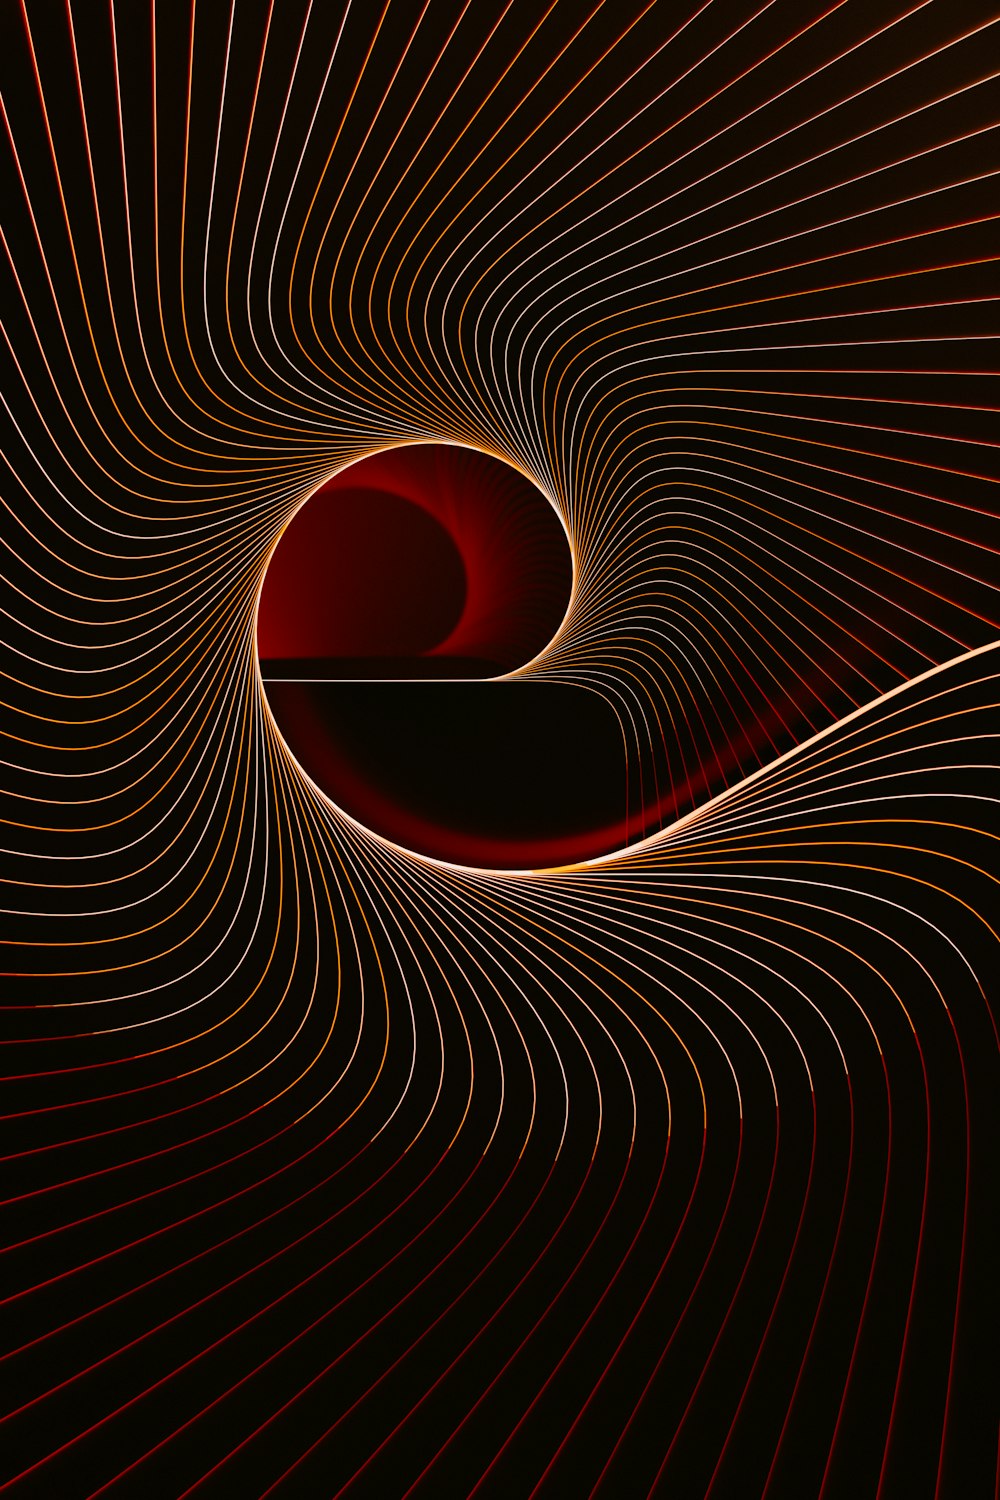 une image générée par ordinateur d’un tourbillon rouge